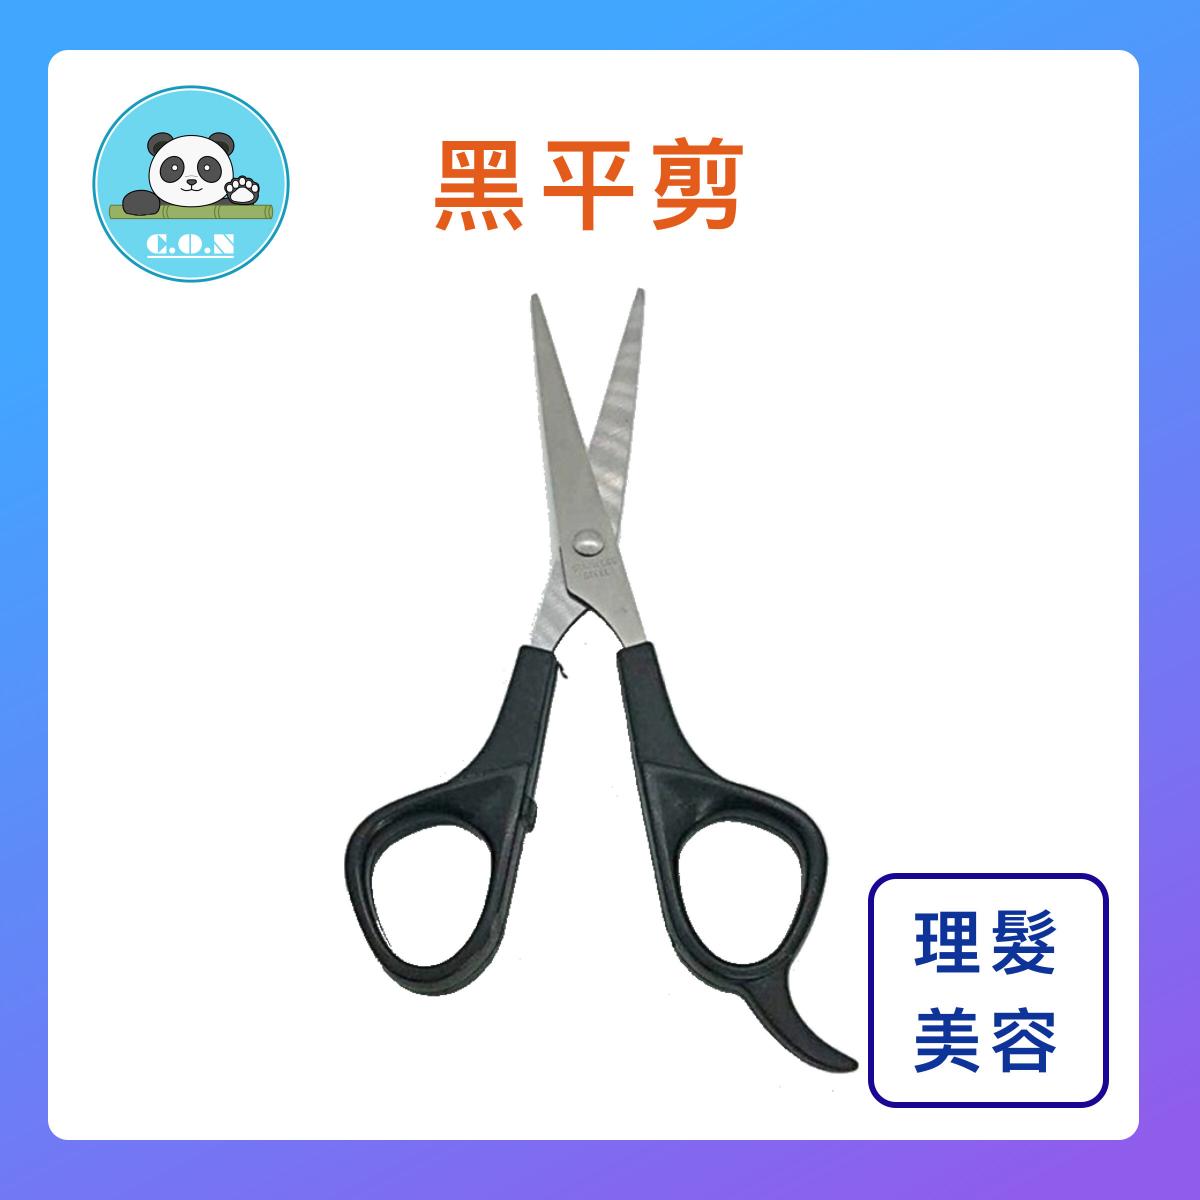 【scissors輕便超值款(黑平剪)1把】輕便款 易用超值款 直剪理髮剪刀 平剪  寵物剪  理髮剪